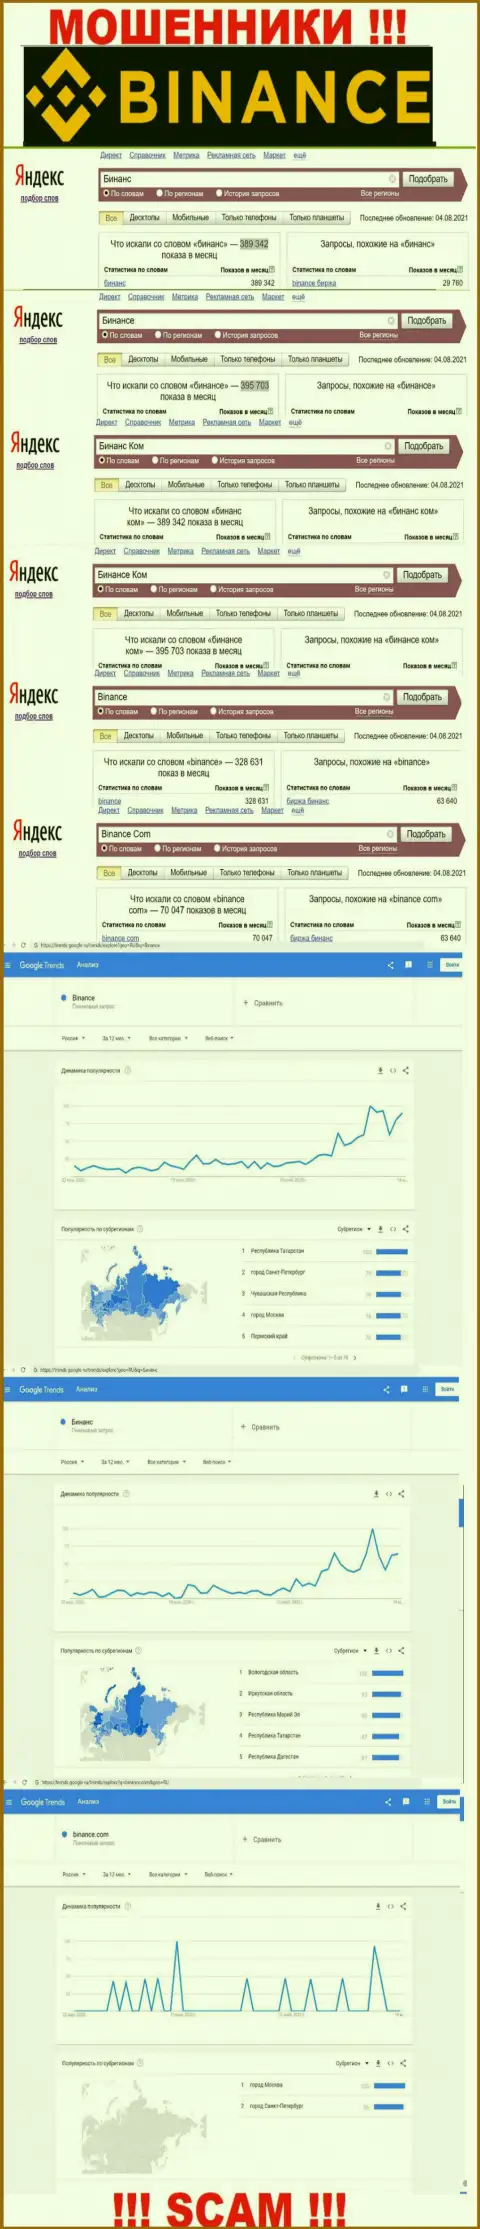 Статистические данные о запросах в поисковиках всемирной сети internet данных об компании Binance